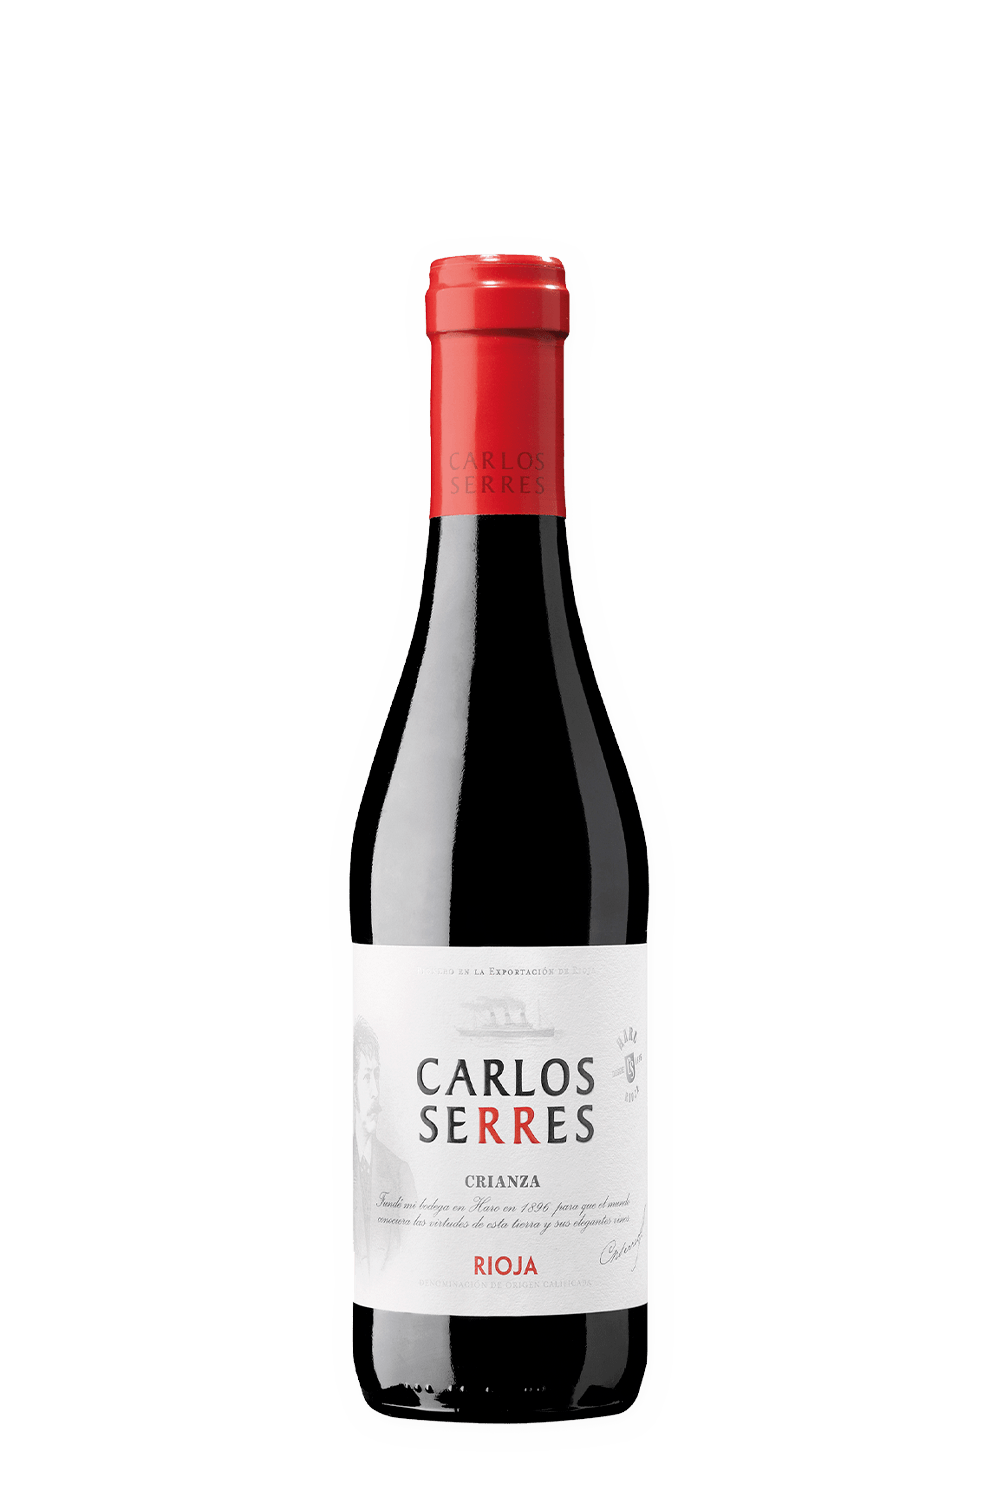 carlos-serres-023161